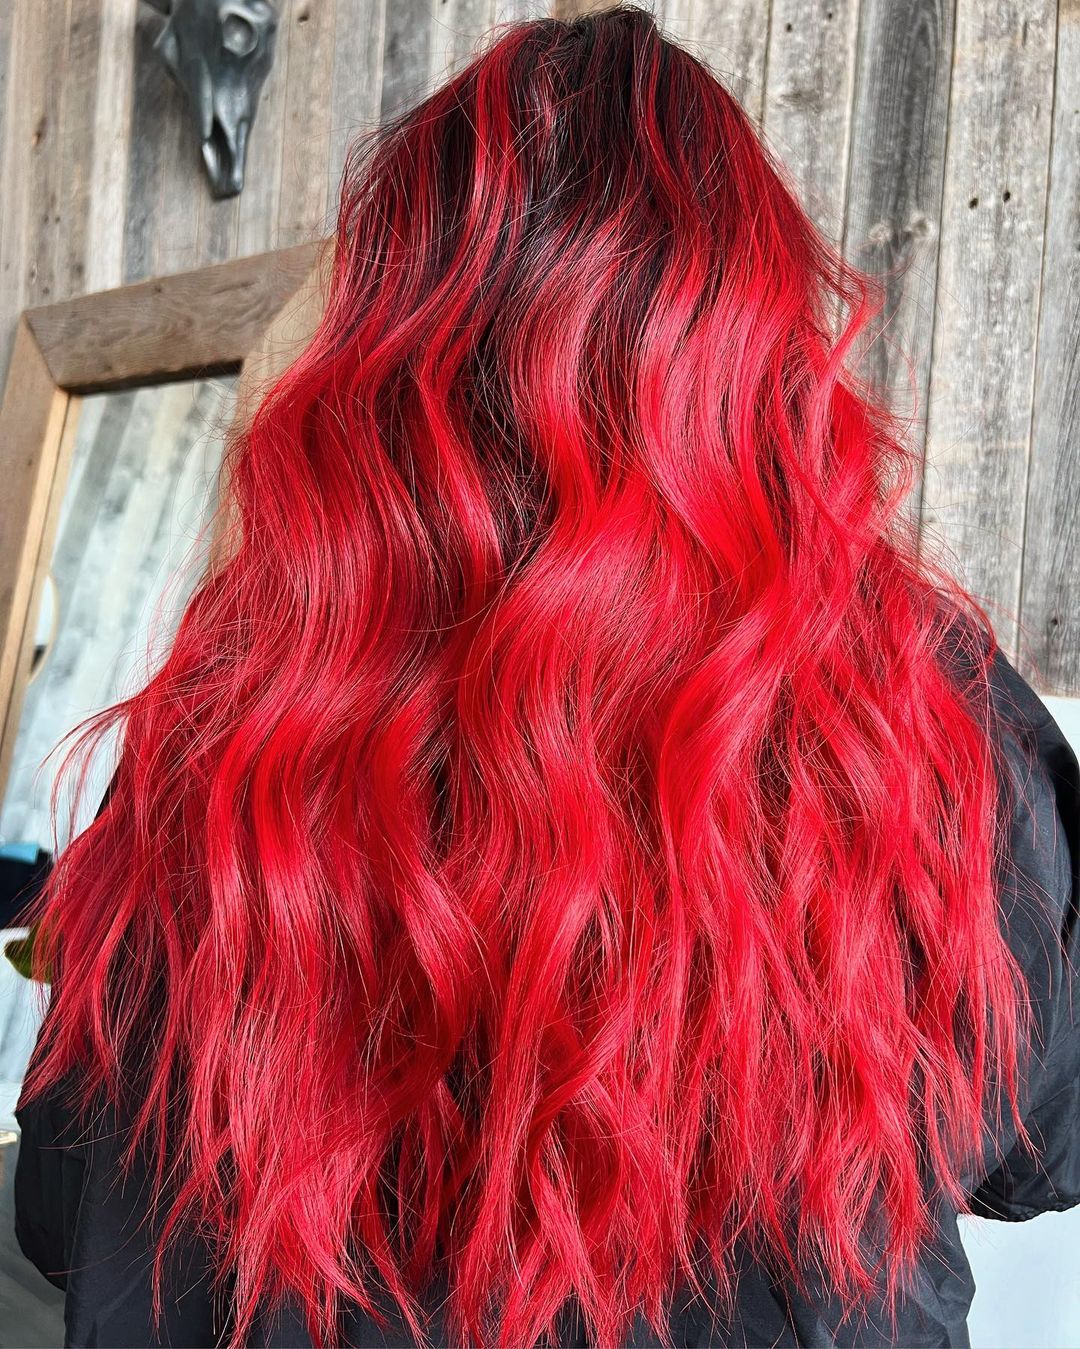 pelo rojo cereza sobre base negra